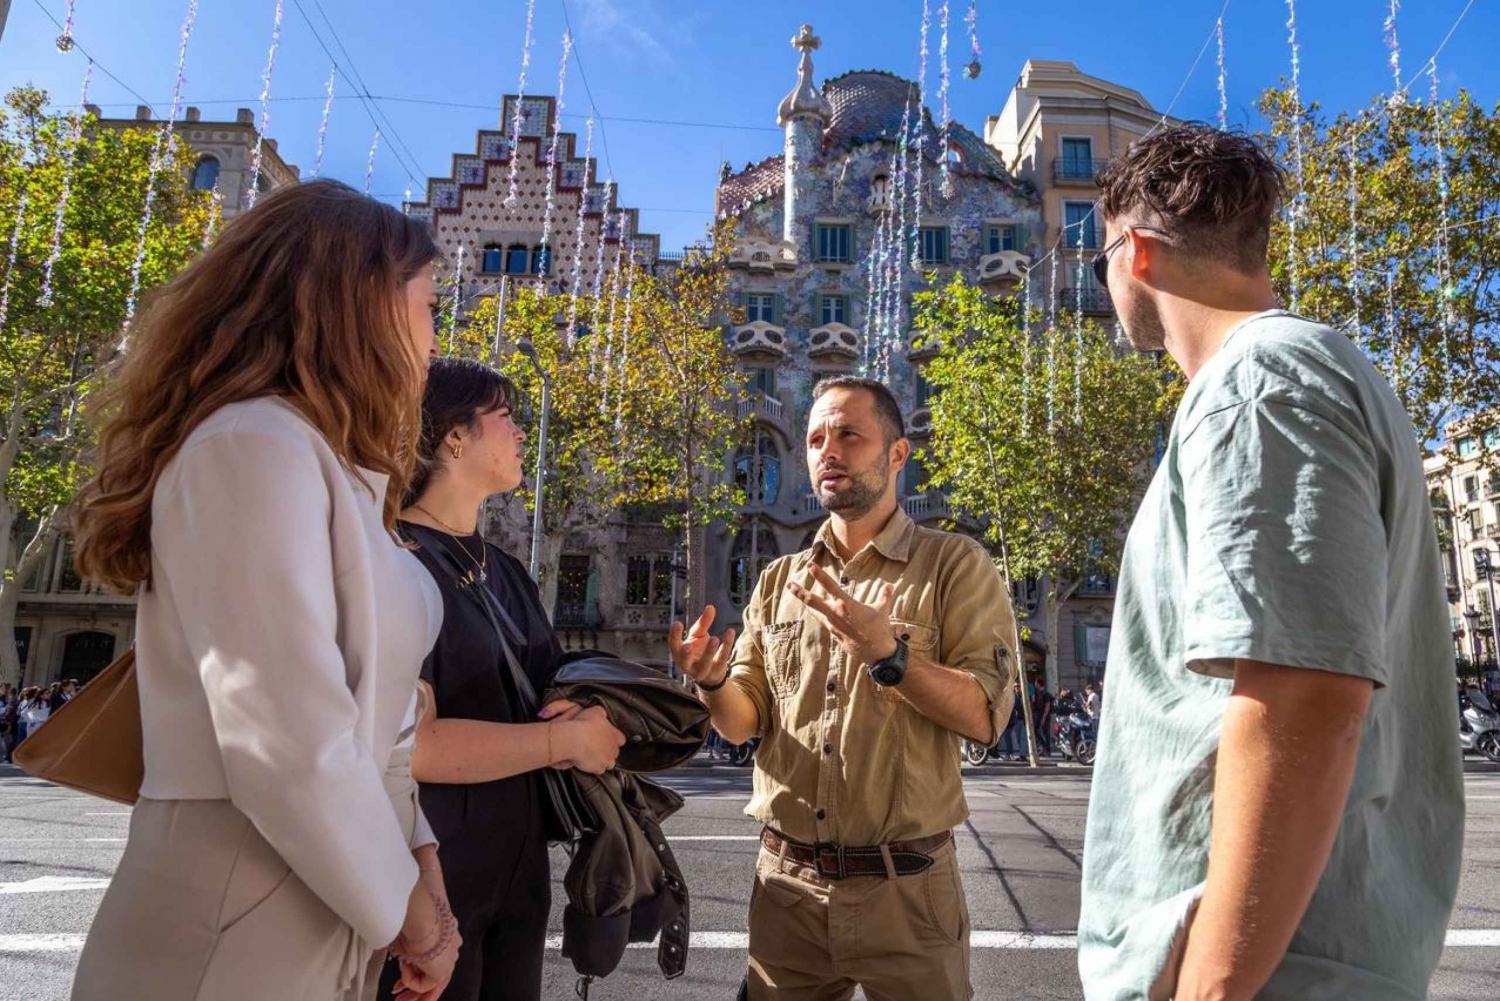 Visite de Gaudí : Monuments incontournables et joyaux cachés du modernisme